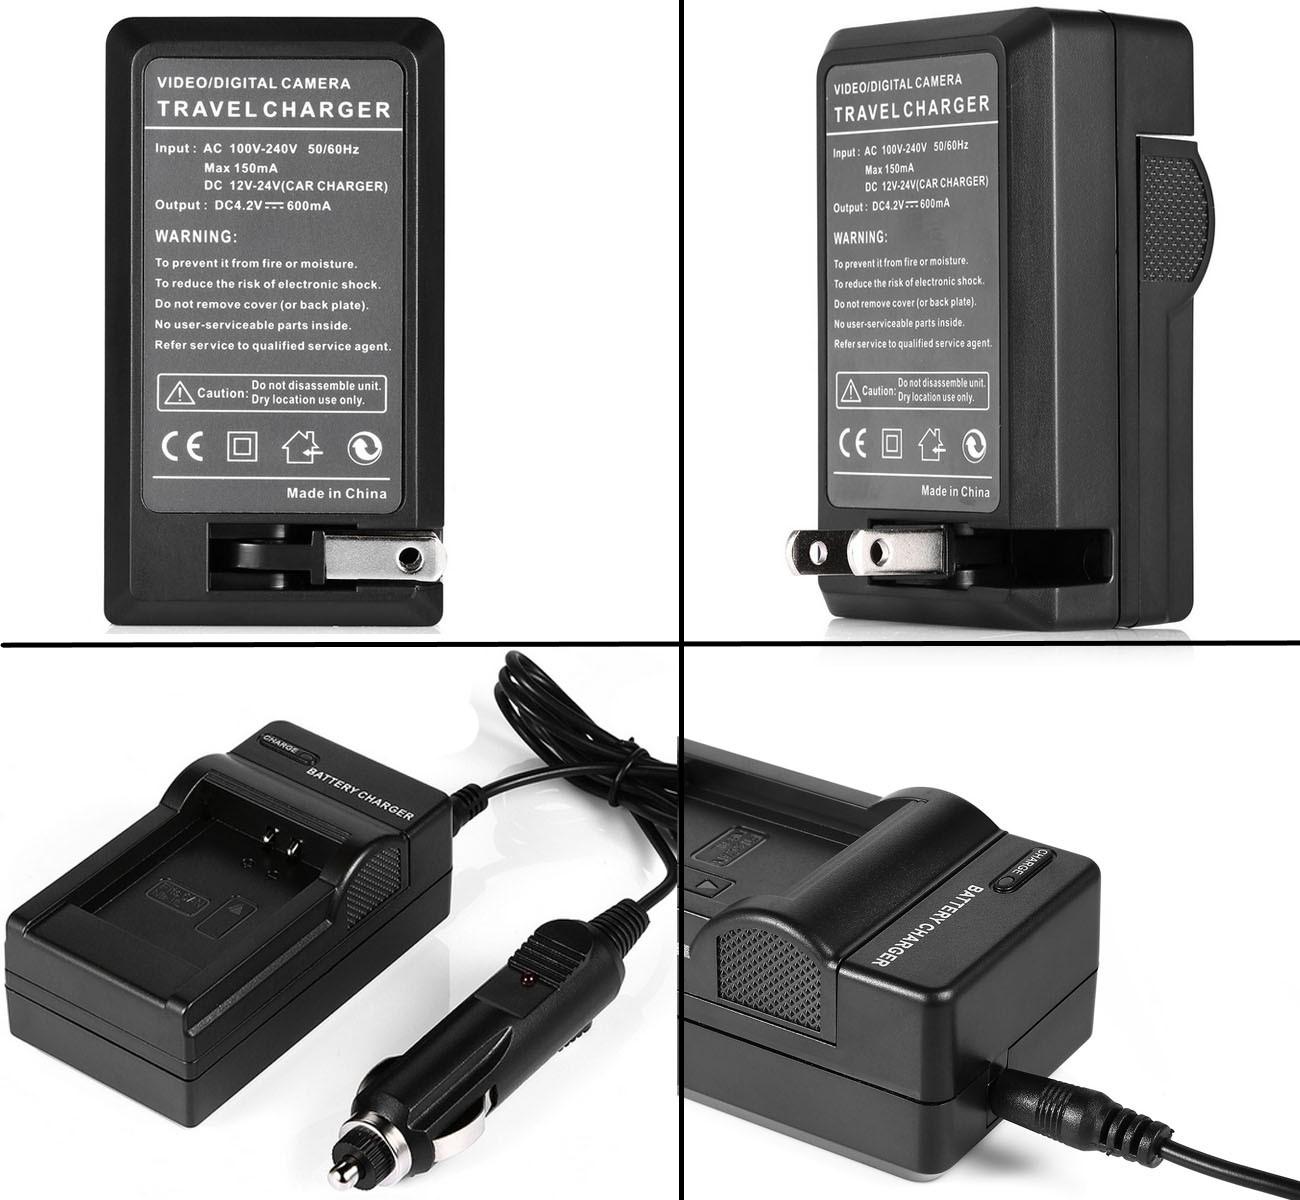 Изображение товара: Аккумулятор + зарядное устройство для Sony HDR-AS50, HDR-AS100V, HDR-AS200V, HDR-AS300, FDR-X1000V, Action Cam, цифровая видеокамера